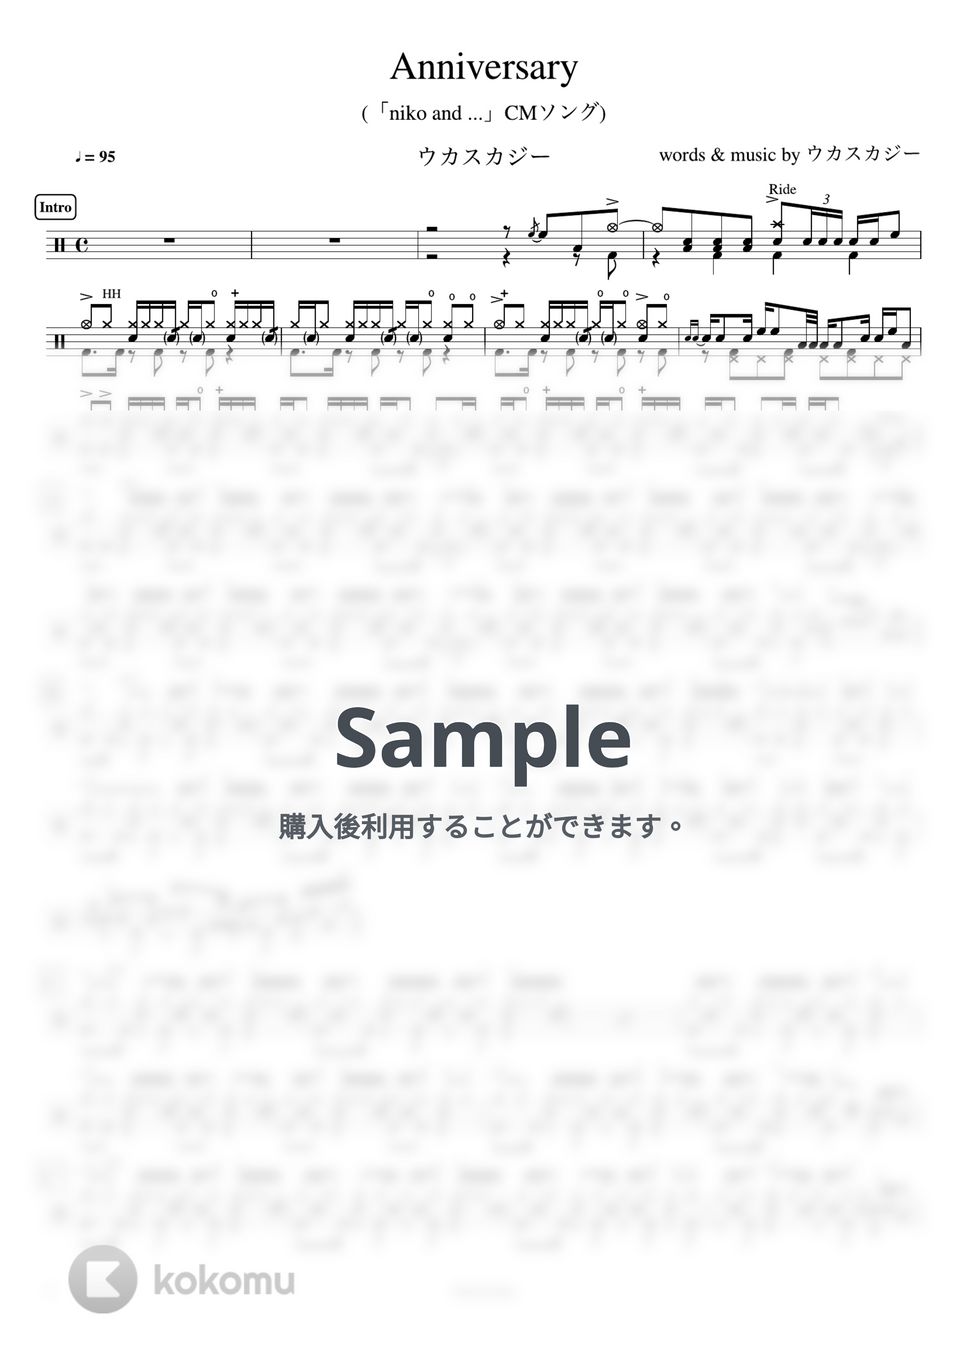 ウカスカジー - Anniversary (「niko and ...」CMソング) by ドラムが好き！